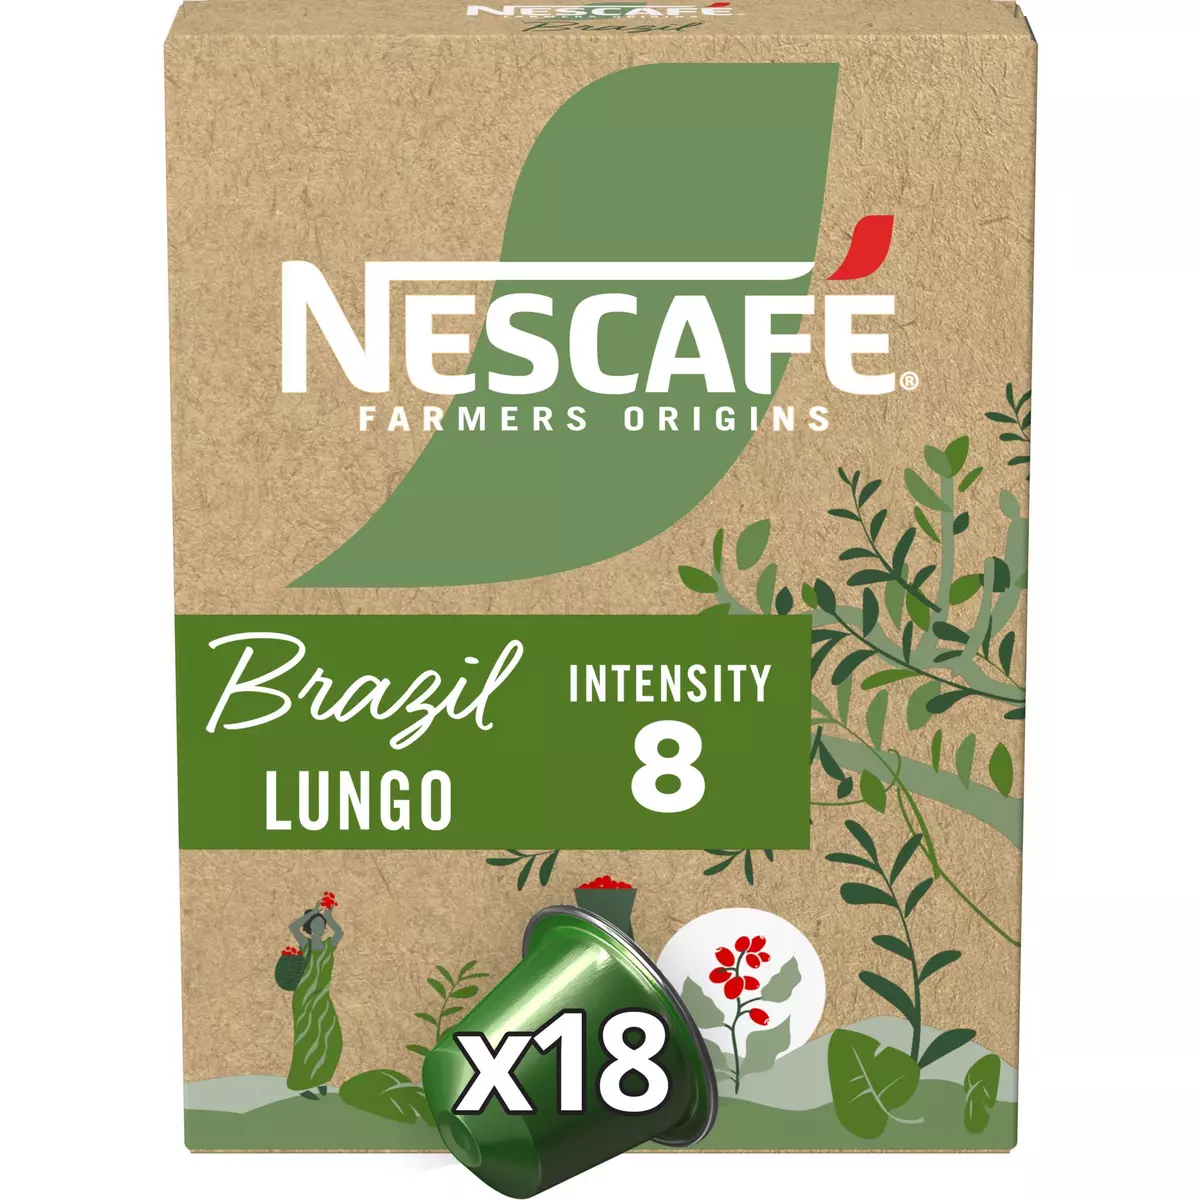 NESCAFE Capsules de café Lungo Farmers Origins Brazil intensité 8 compatibles Nespresso 18 capsules 79g